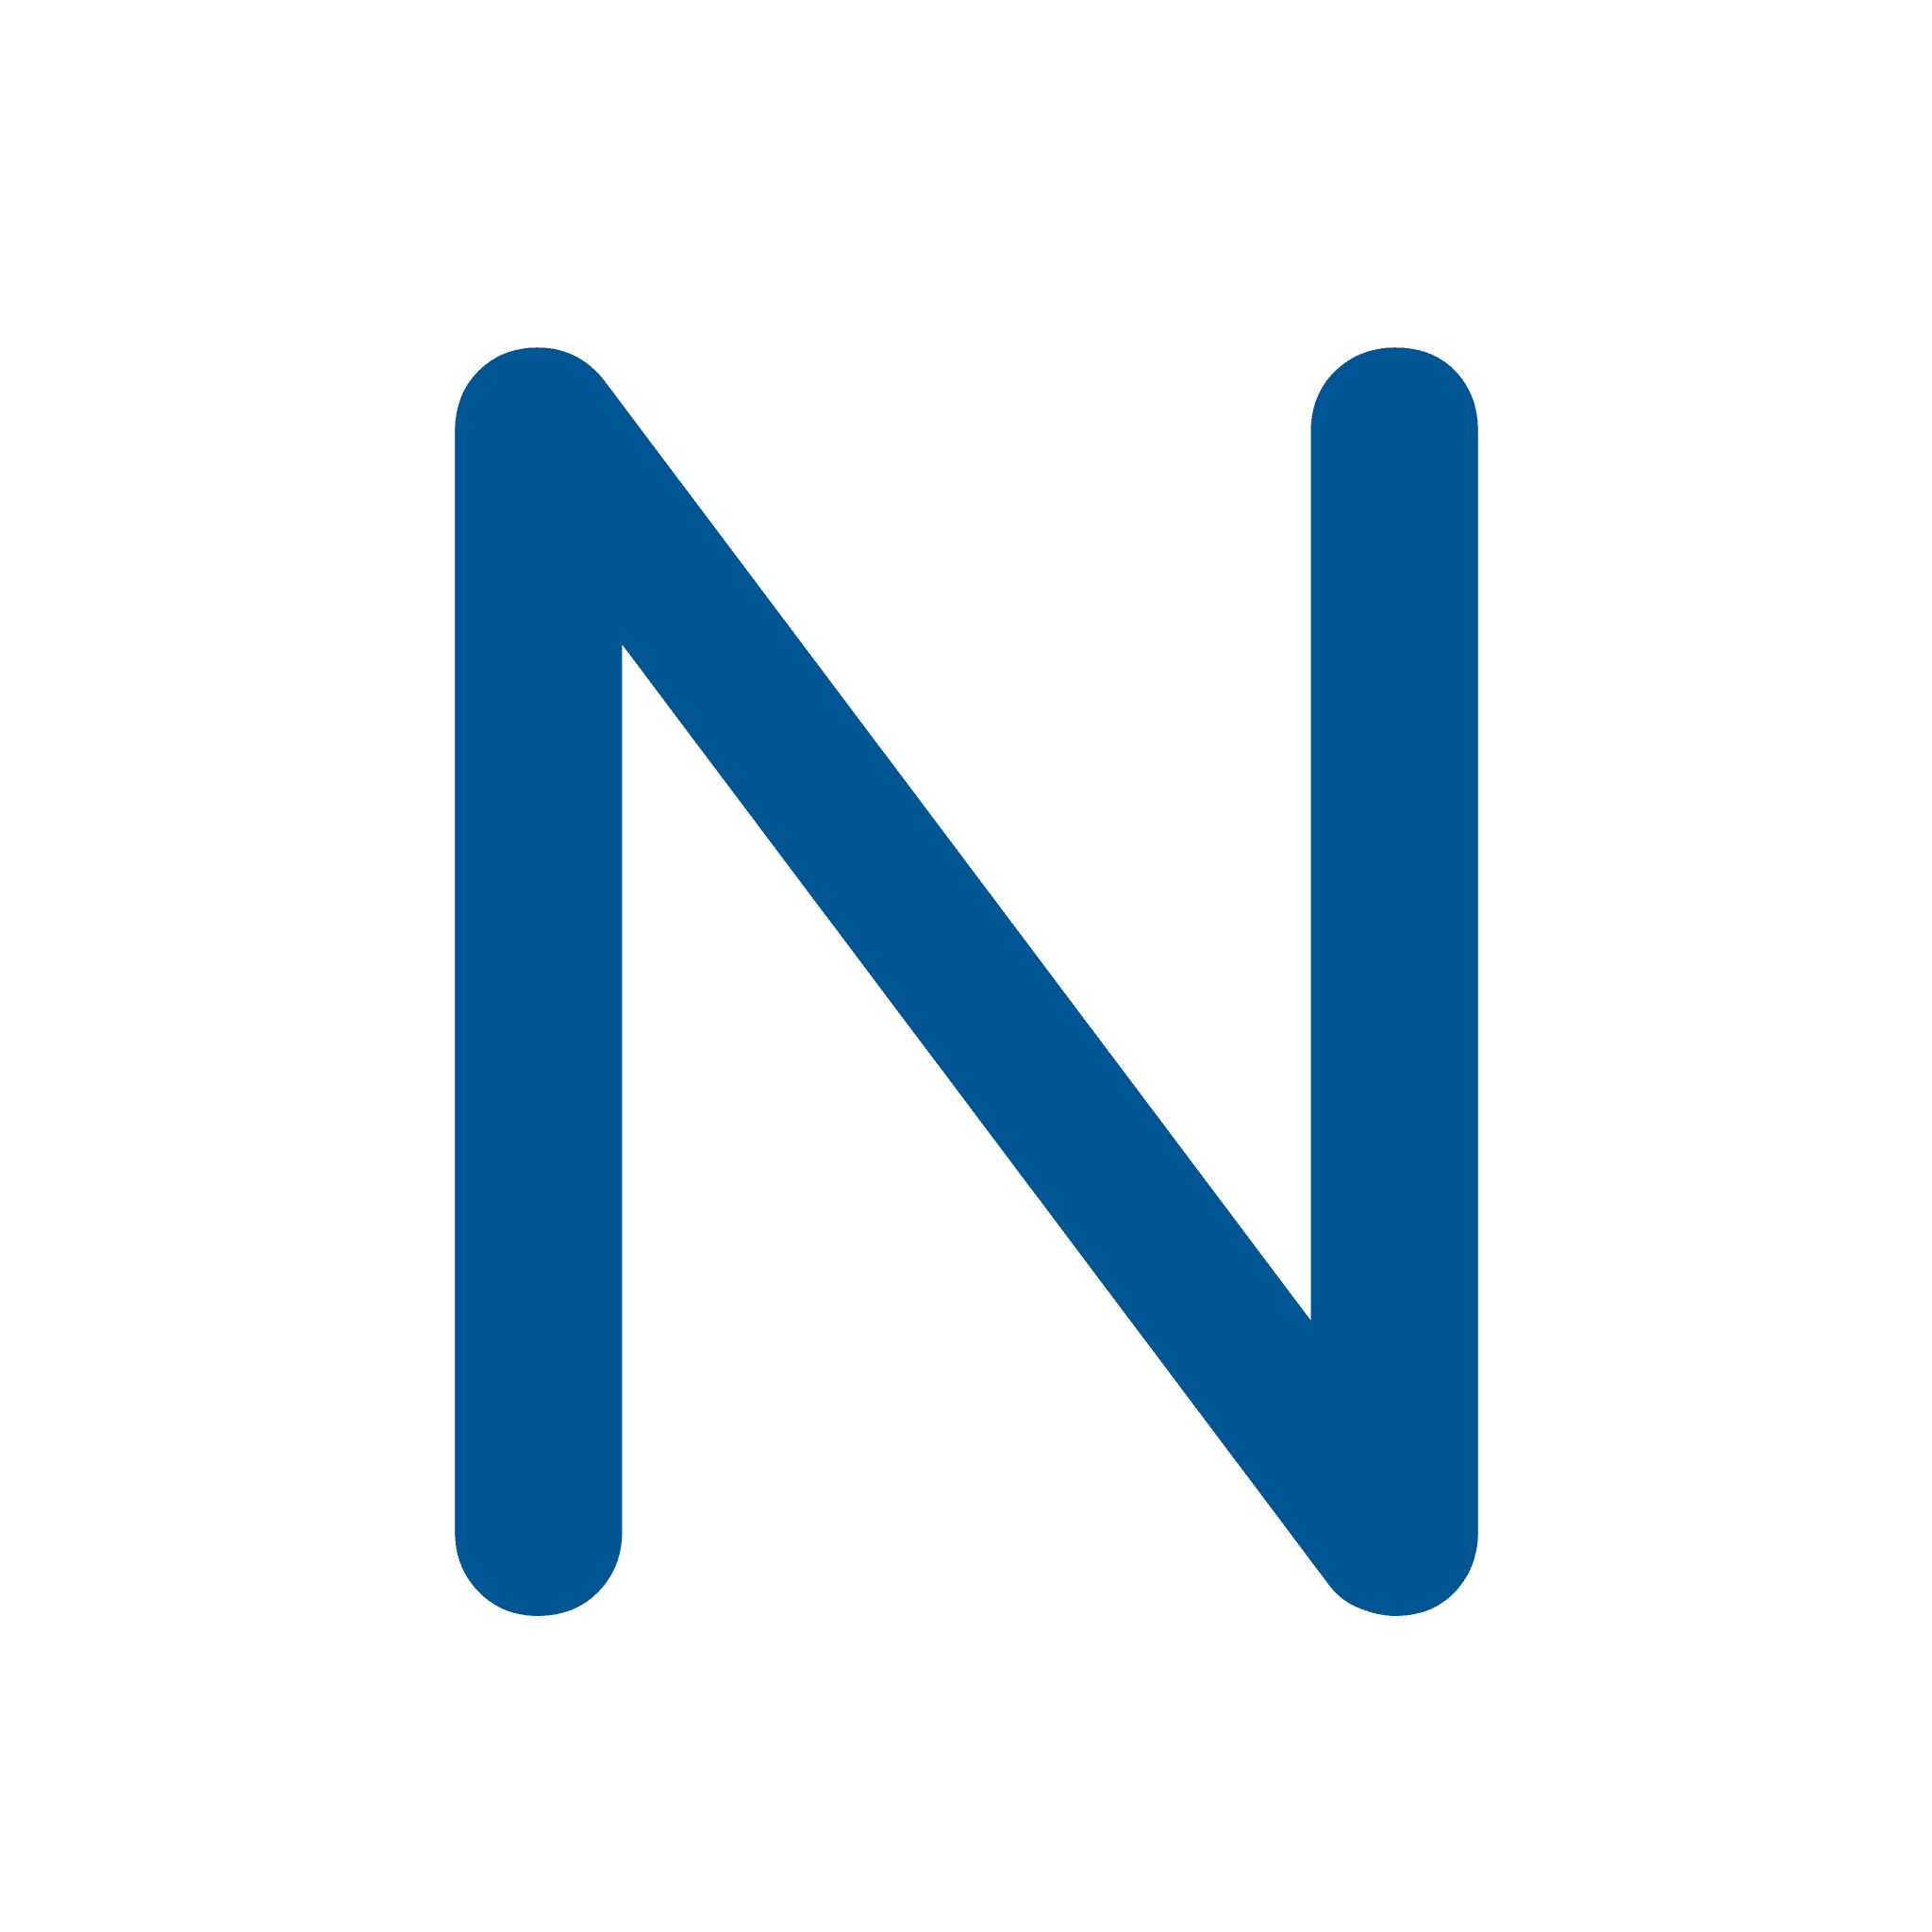 NNLZ logo Nizhny Novgorod Foundry